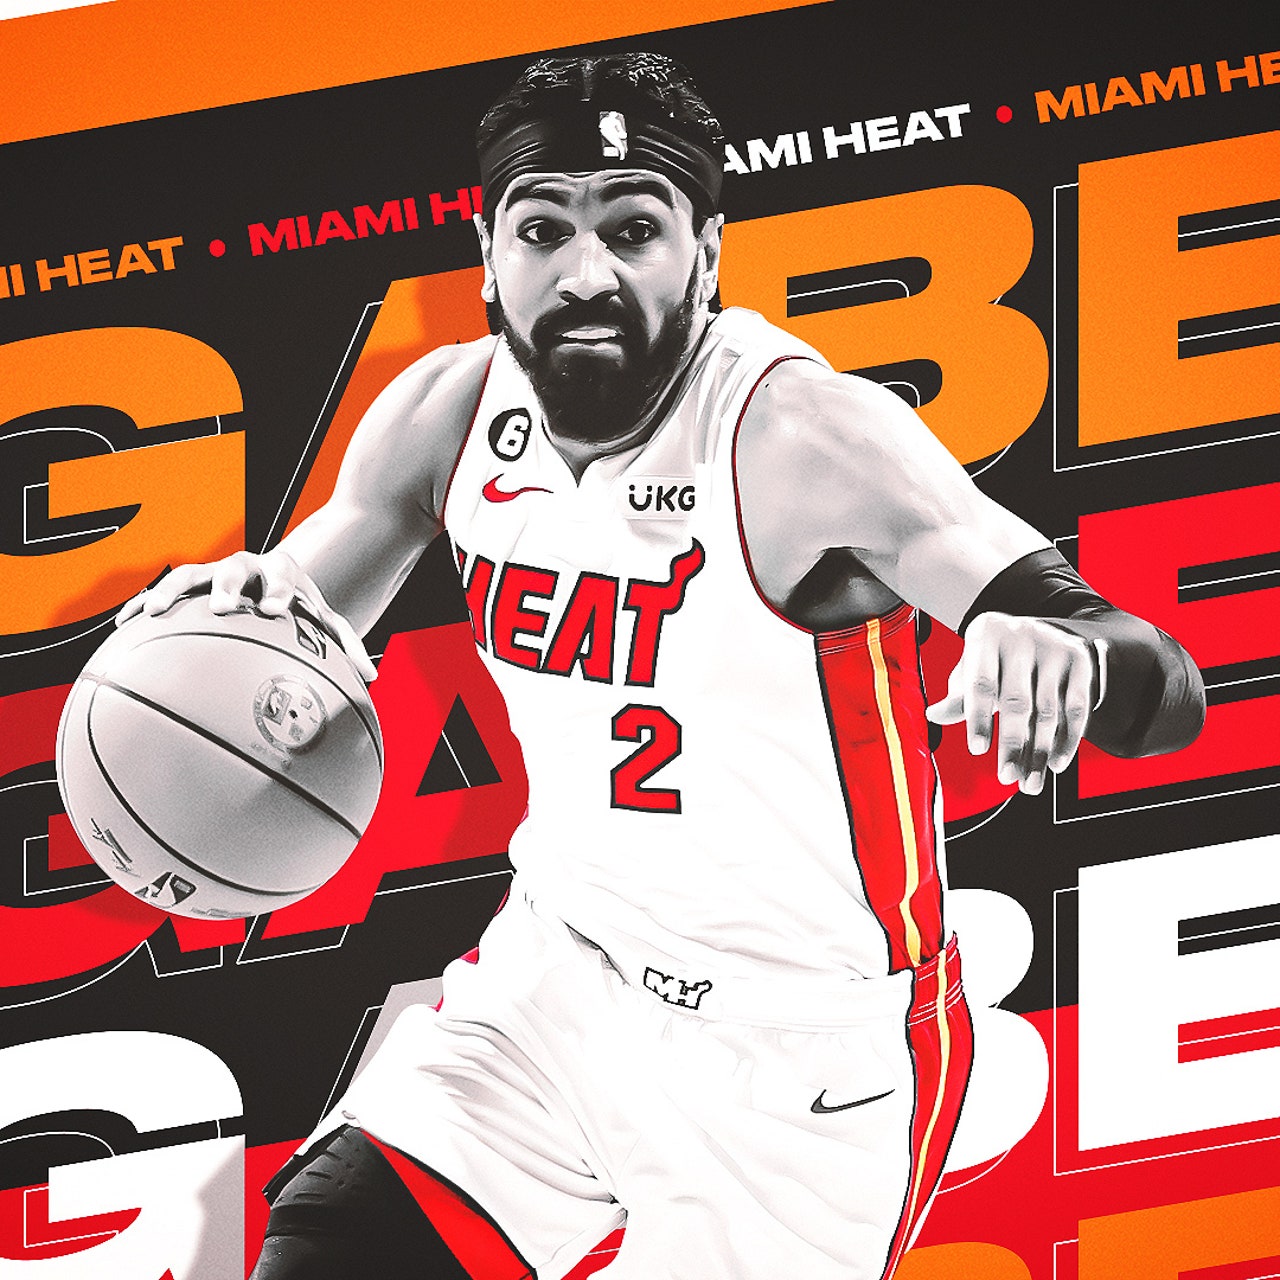 Miami Heat: Jason Williams Covering the entire world in White